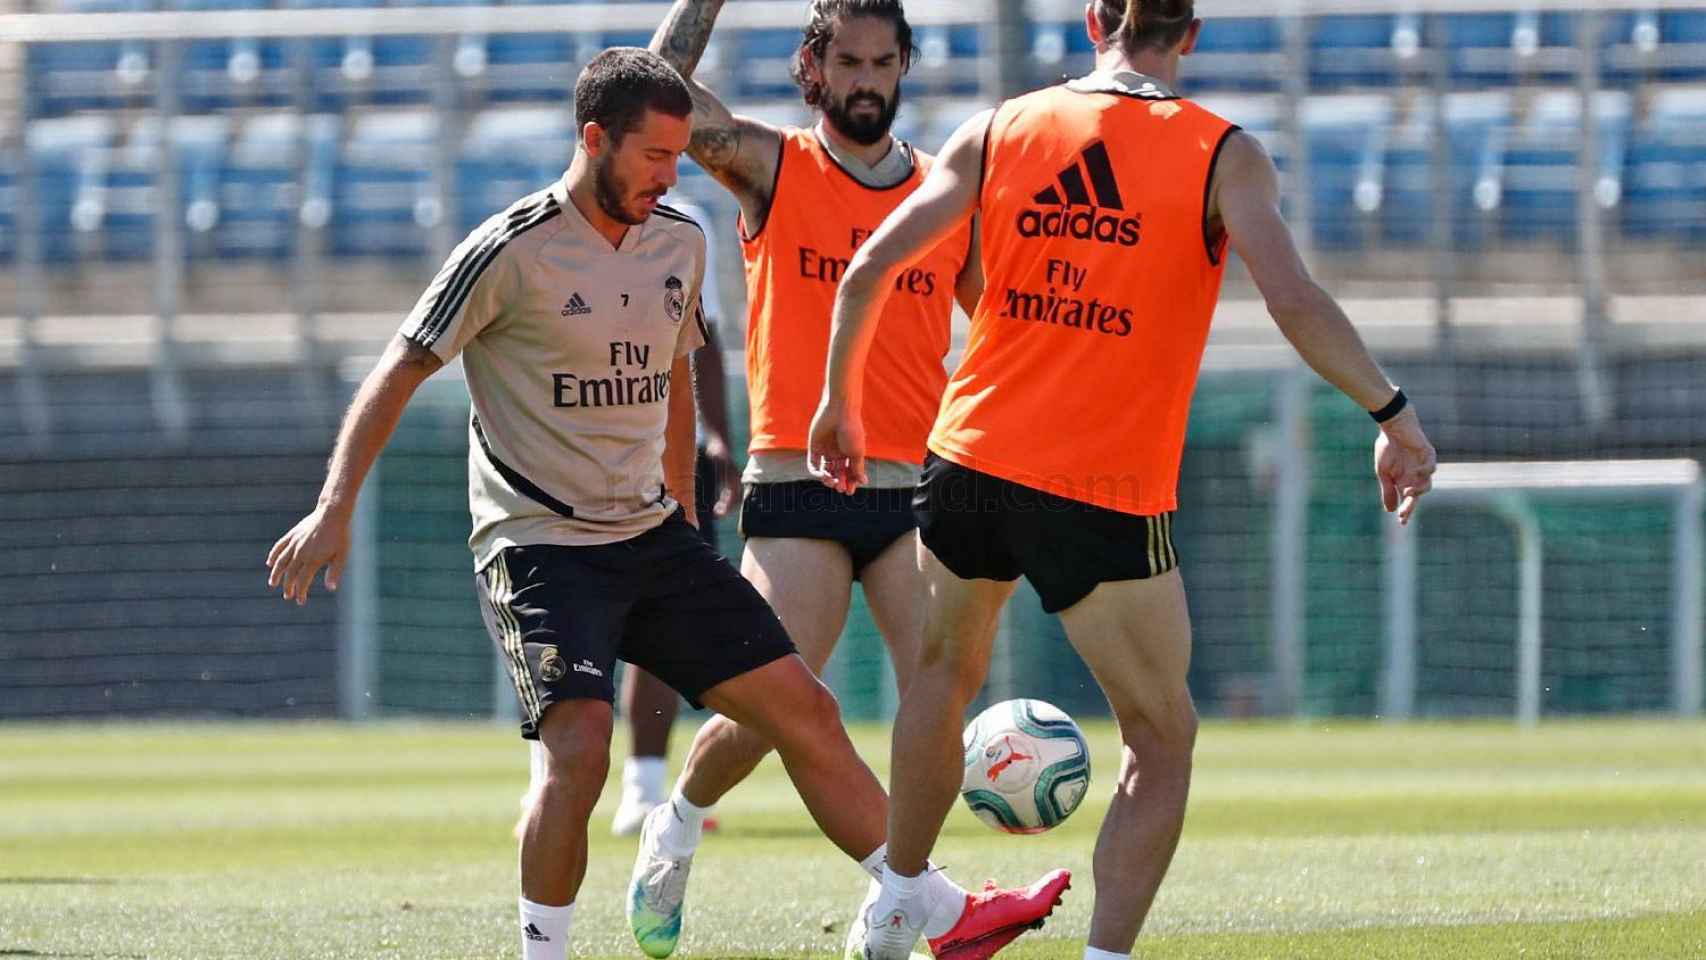 Hazard, Isco y Bale durante un entrenamiento del Real Madrid